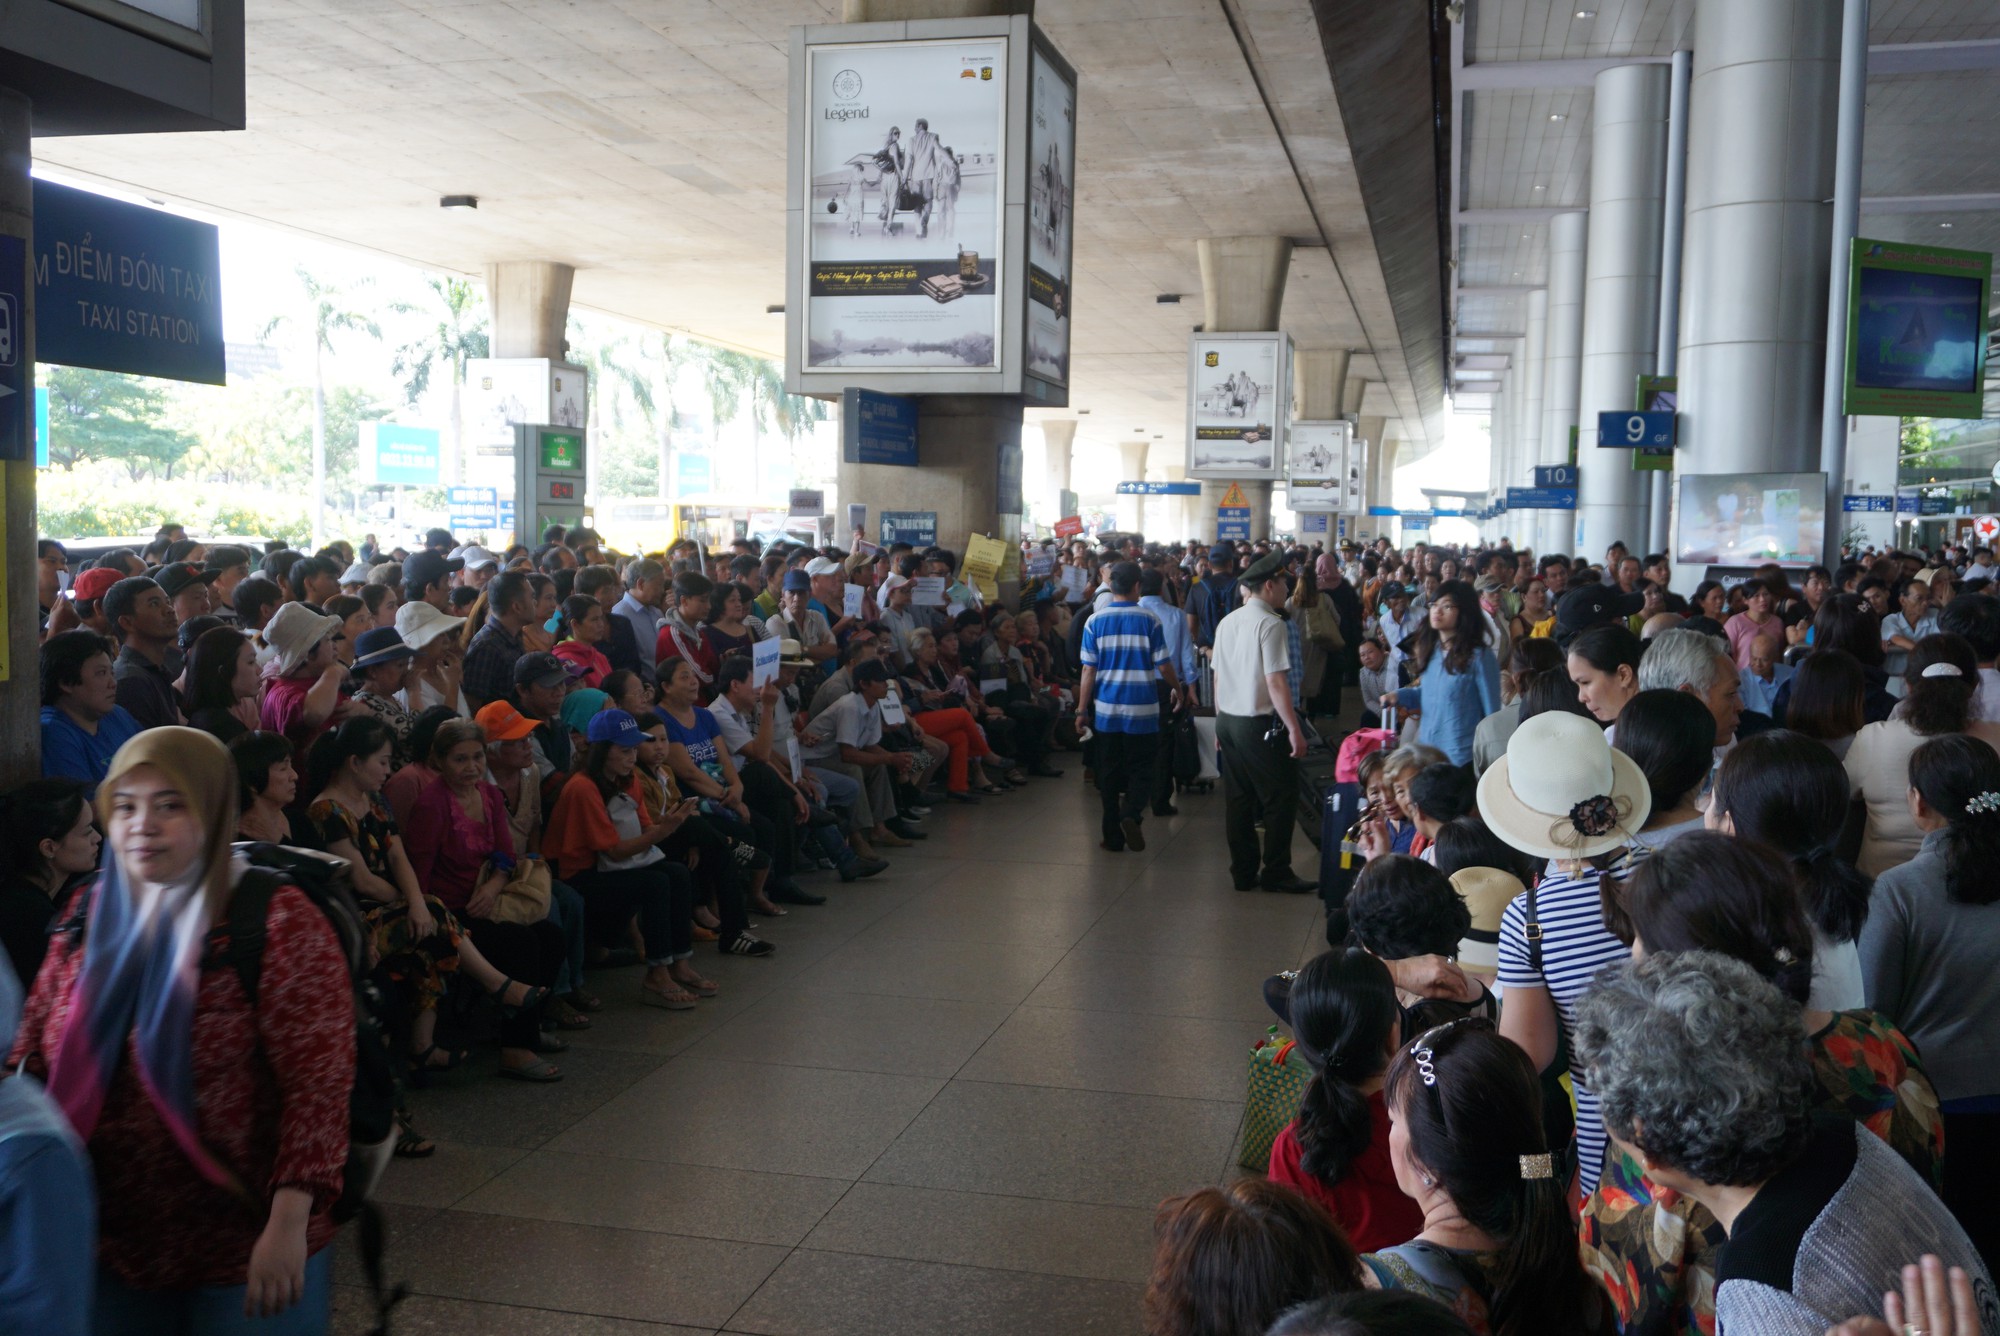 Ngàn người vật vạ ở sân bay Tân Sơn Nhất chờ đón Việt kiều - Ảnh 2.